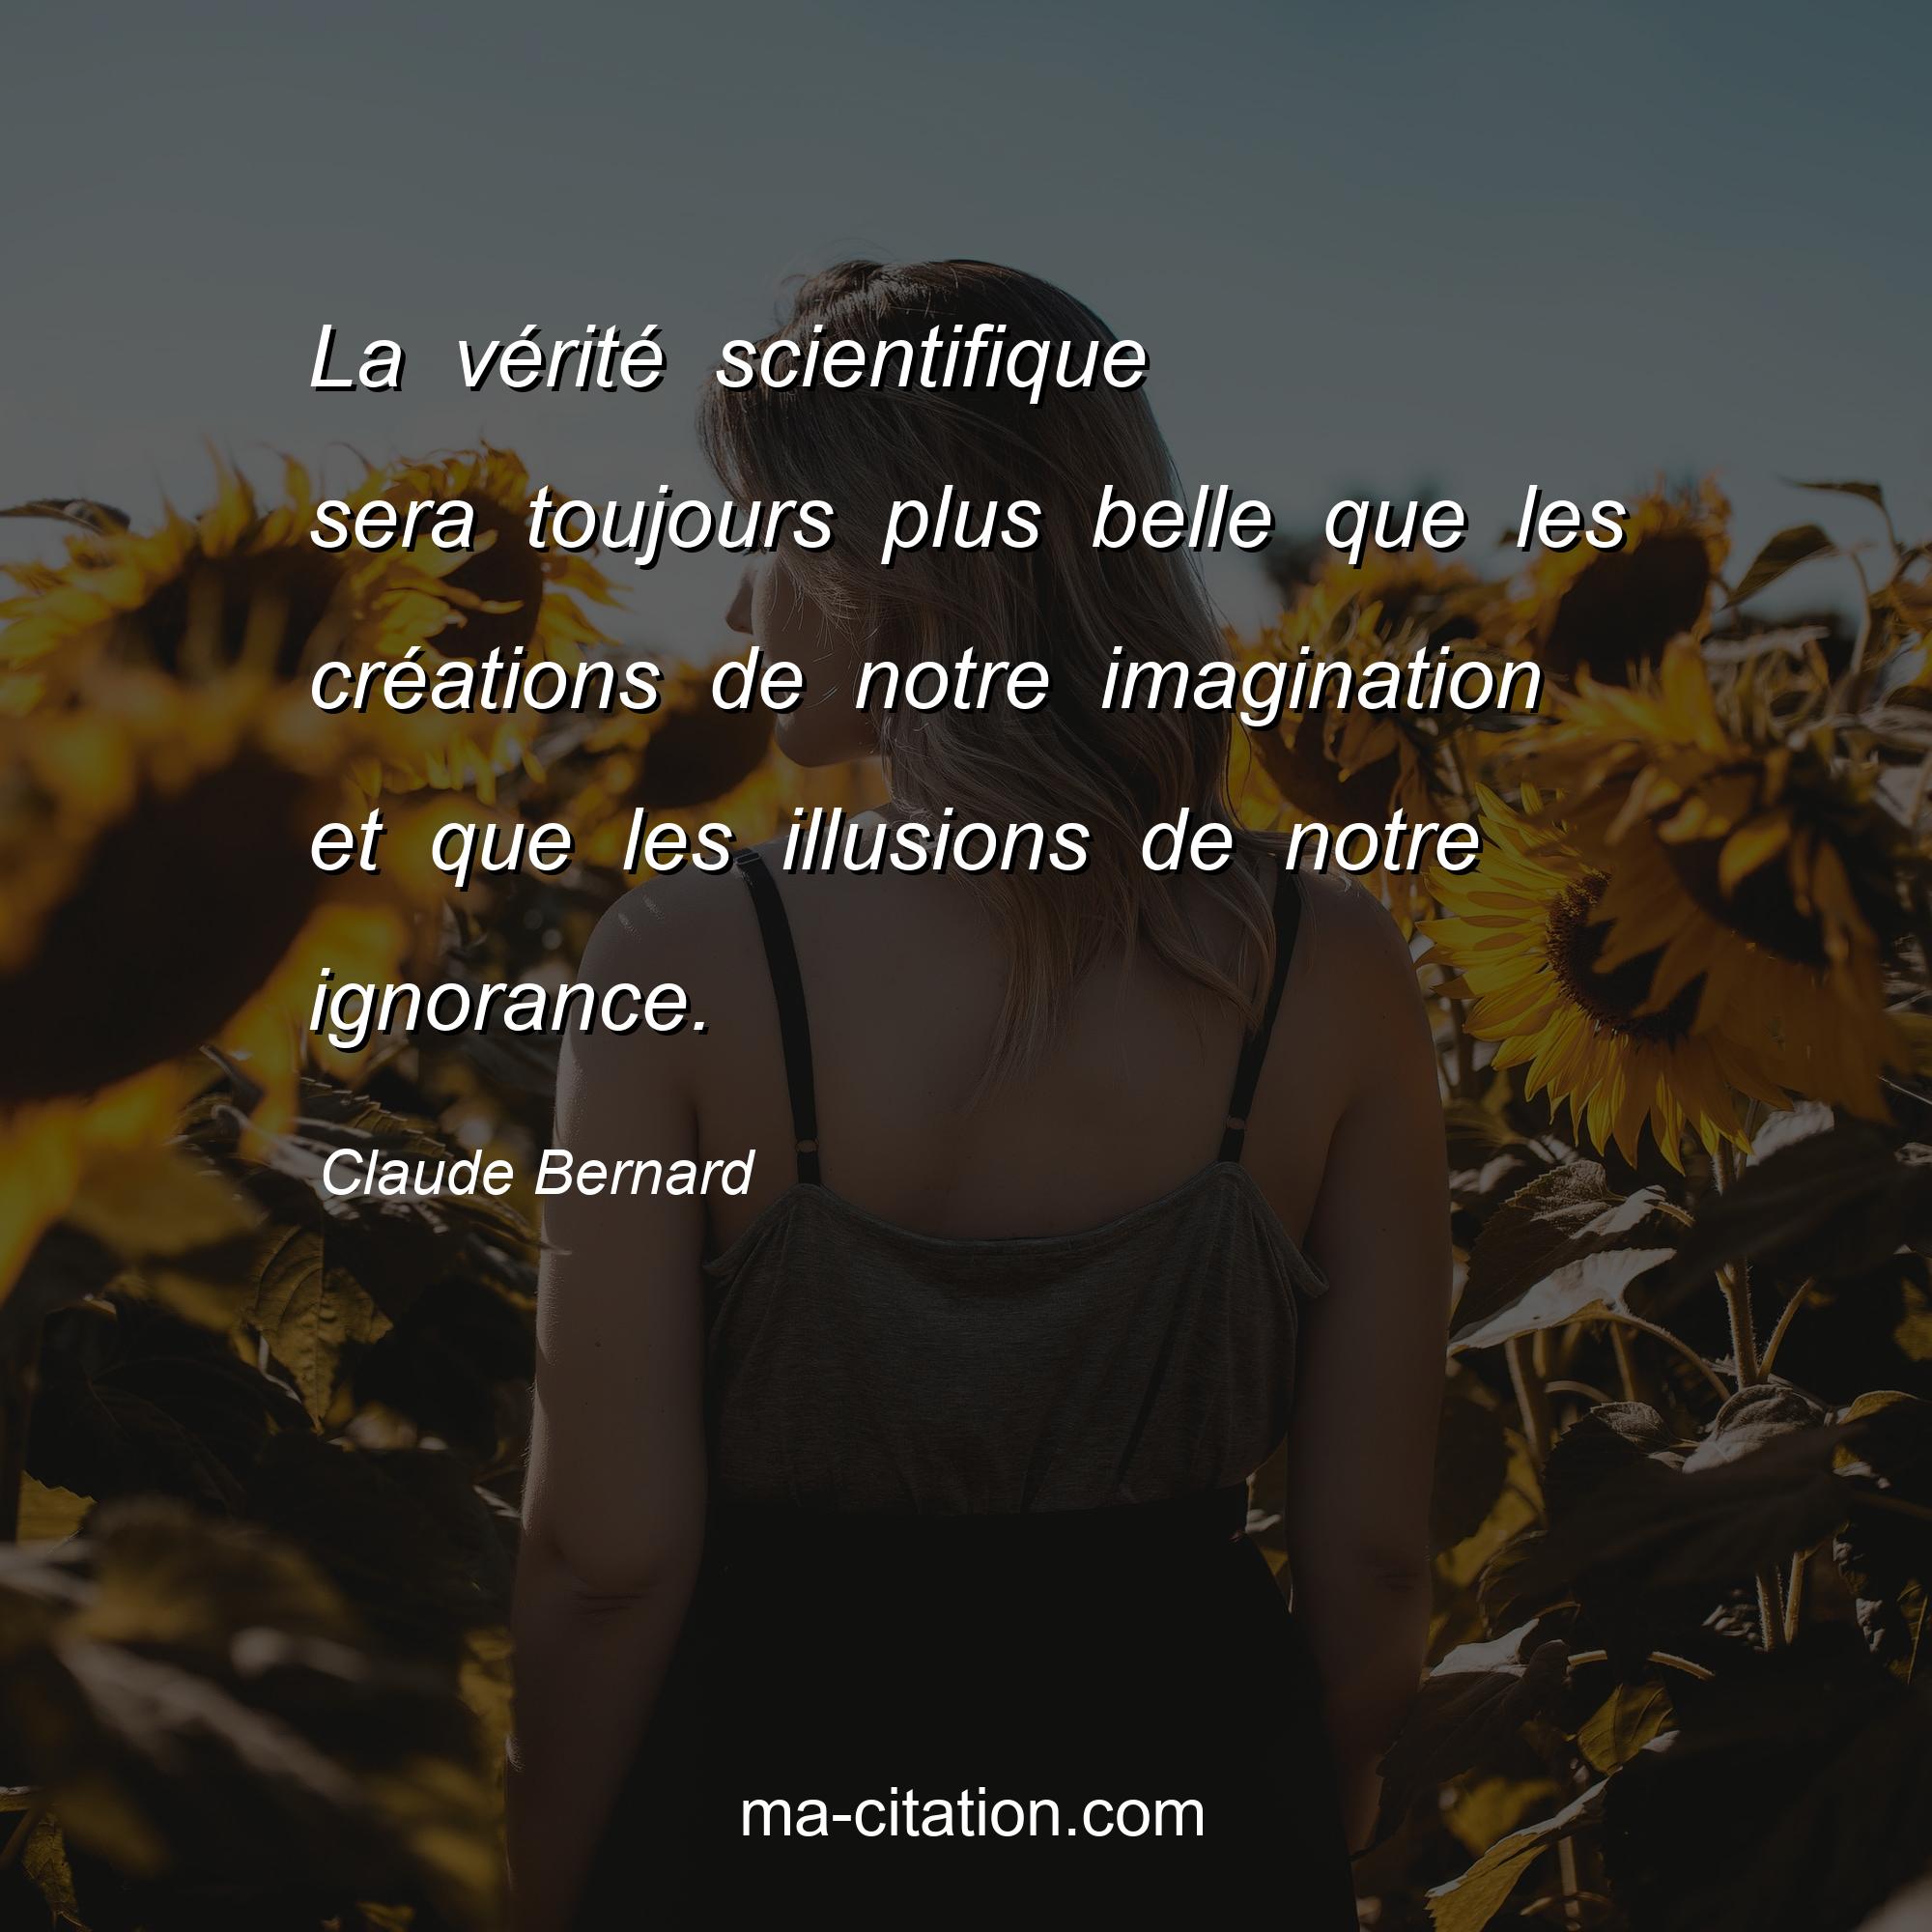 Claude Bernard : La vérité scientifique sera toujours plus belle que les créations de notre imagination et que les illusions de notre ignorance.